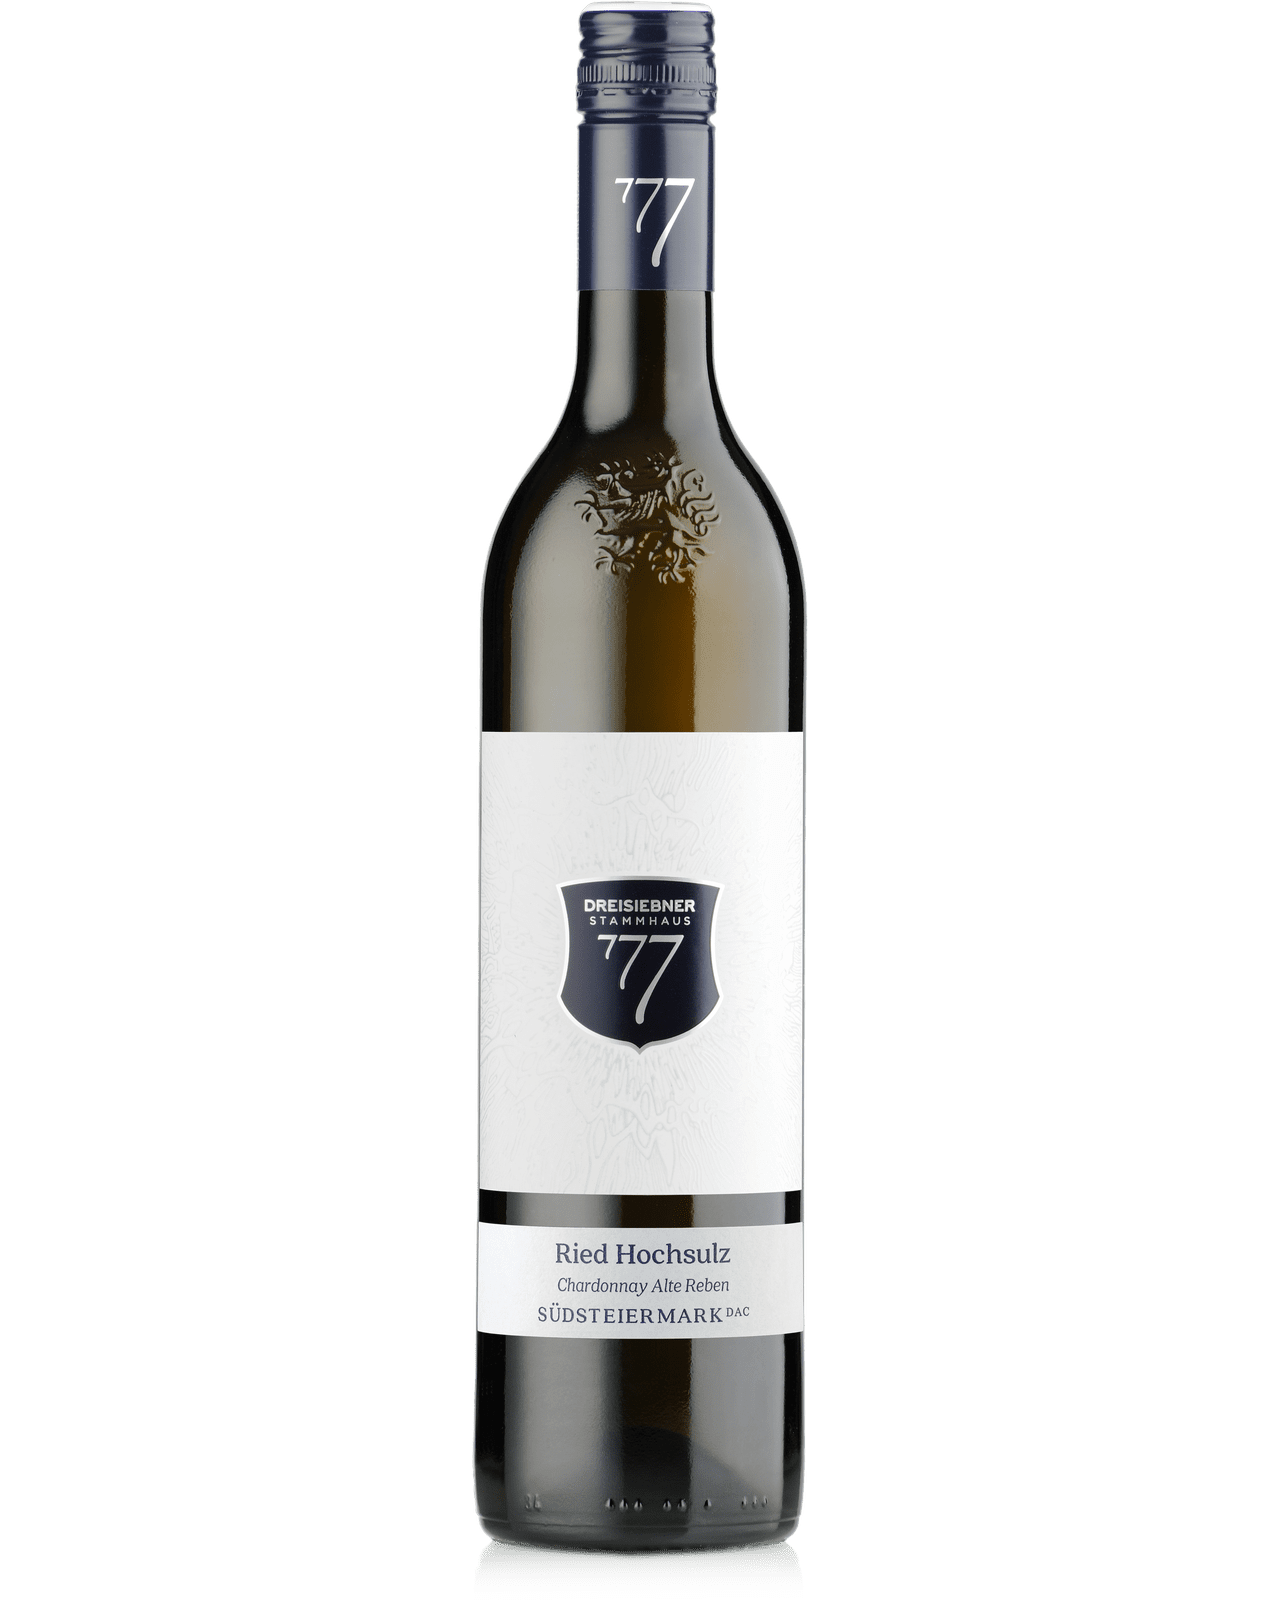 Chardonnay Ried Hochsulz Alte Reben 2018 - GrapeFactory GmbH